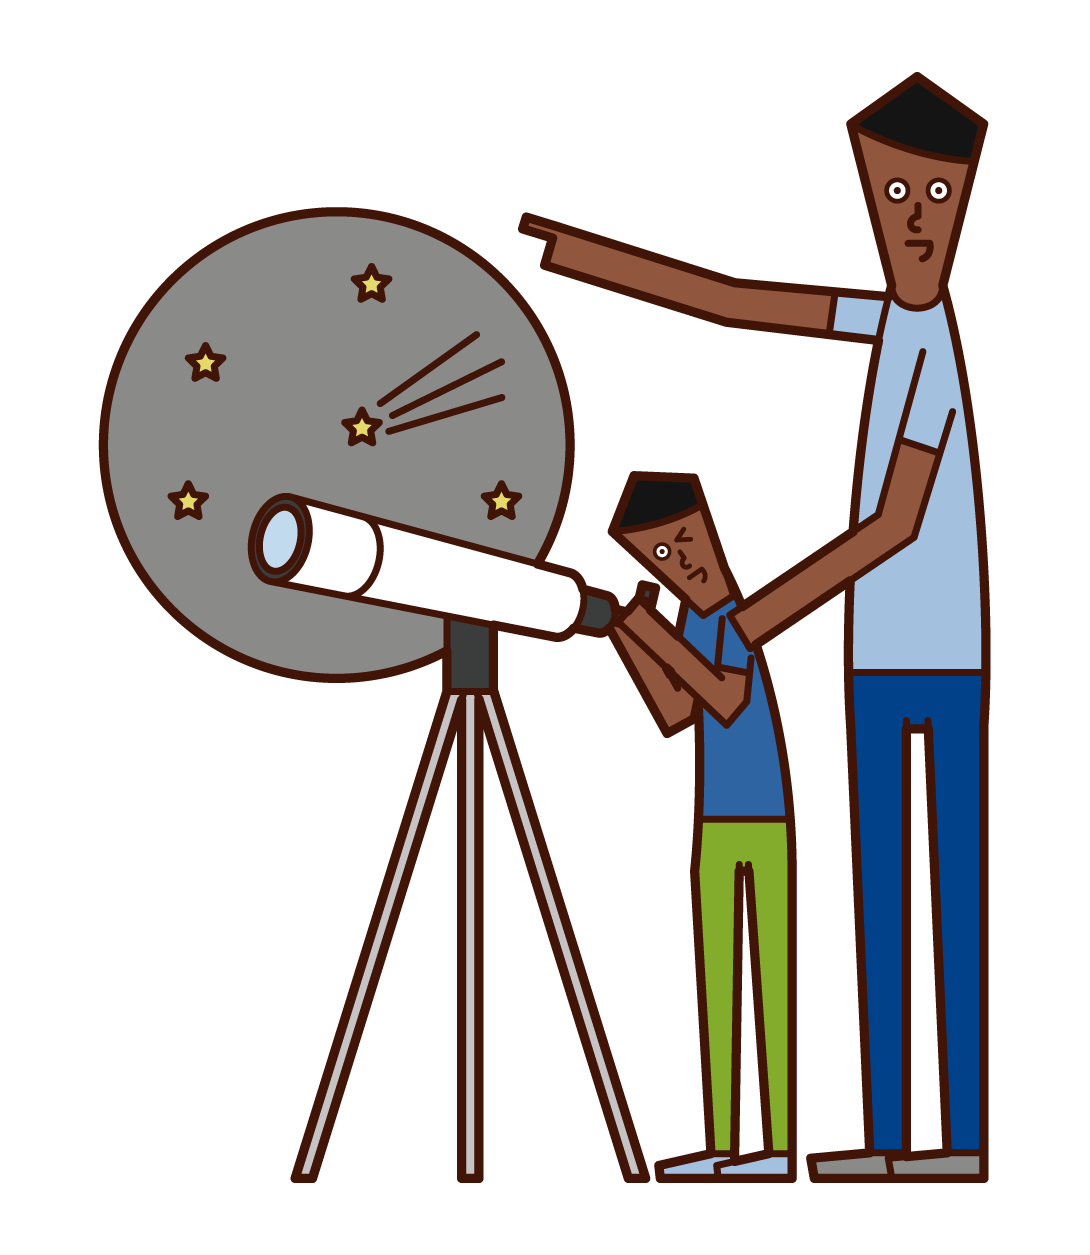 望遠鏡で星空を観察する親子のイラスト フリーイラスト素材集 Kukukeke